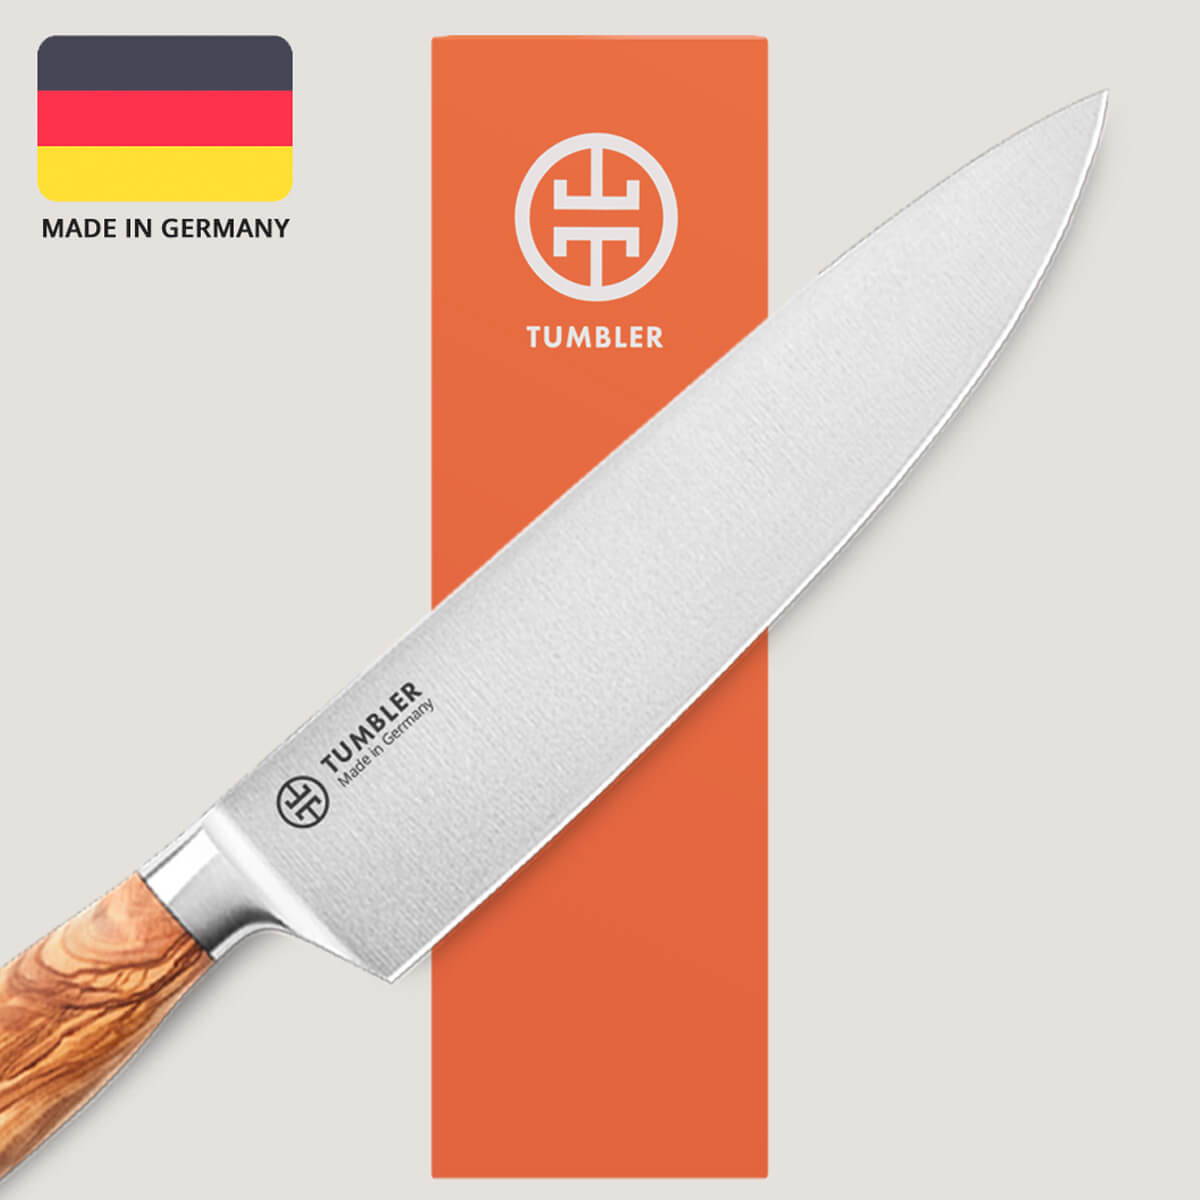 Tumbler Chef's Knife (8) – Tumbler Rolling Knife Sharpener